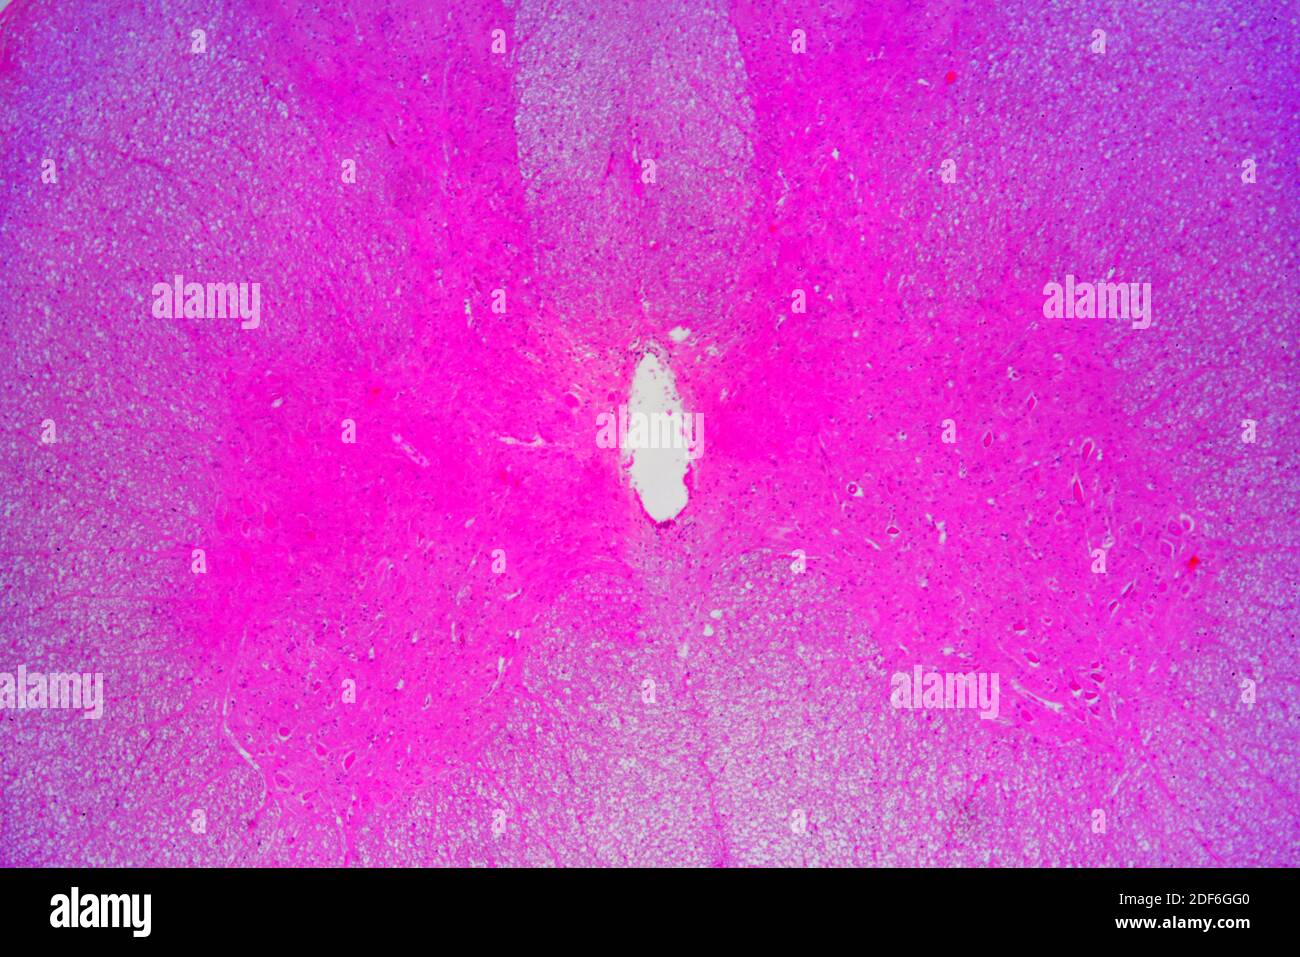 Médula espinal (tejido nervioso) que muestra materia ependimosa y gris. Microscopio óptico X100. Foto de stock